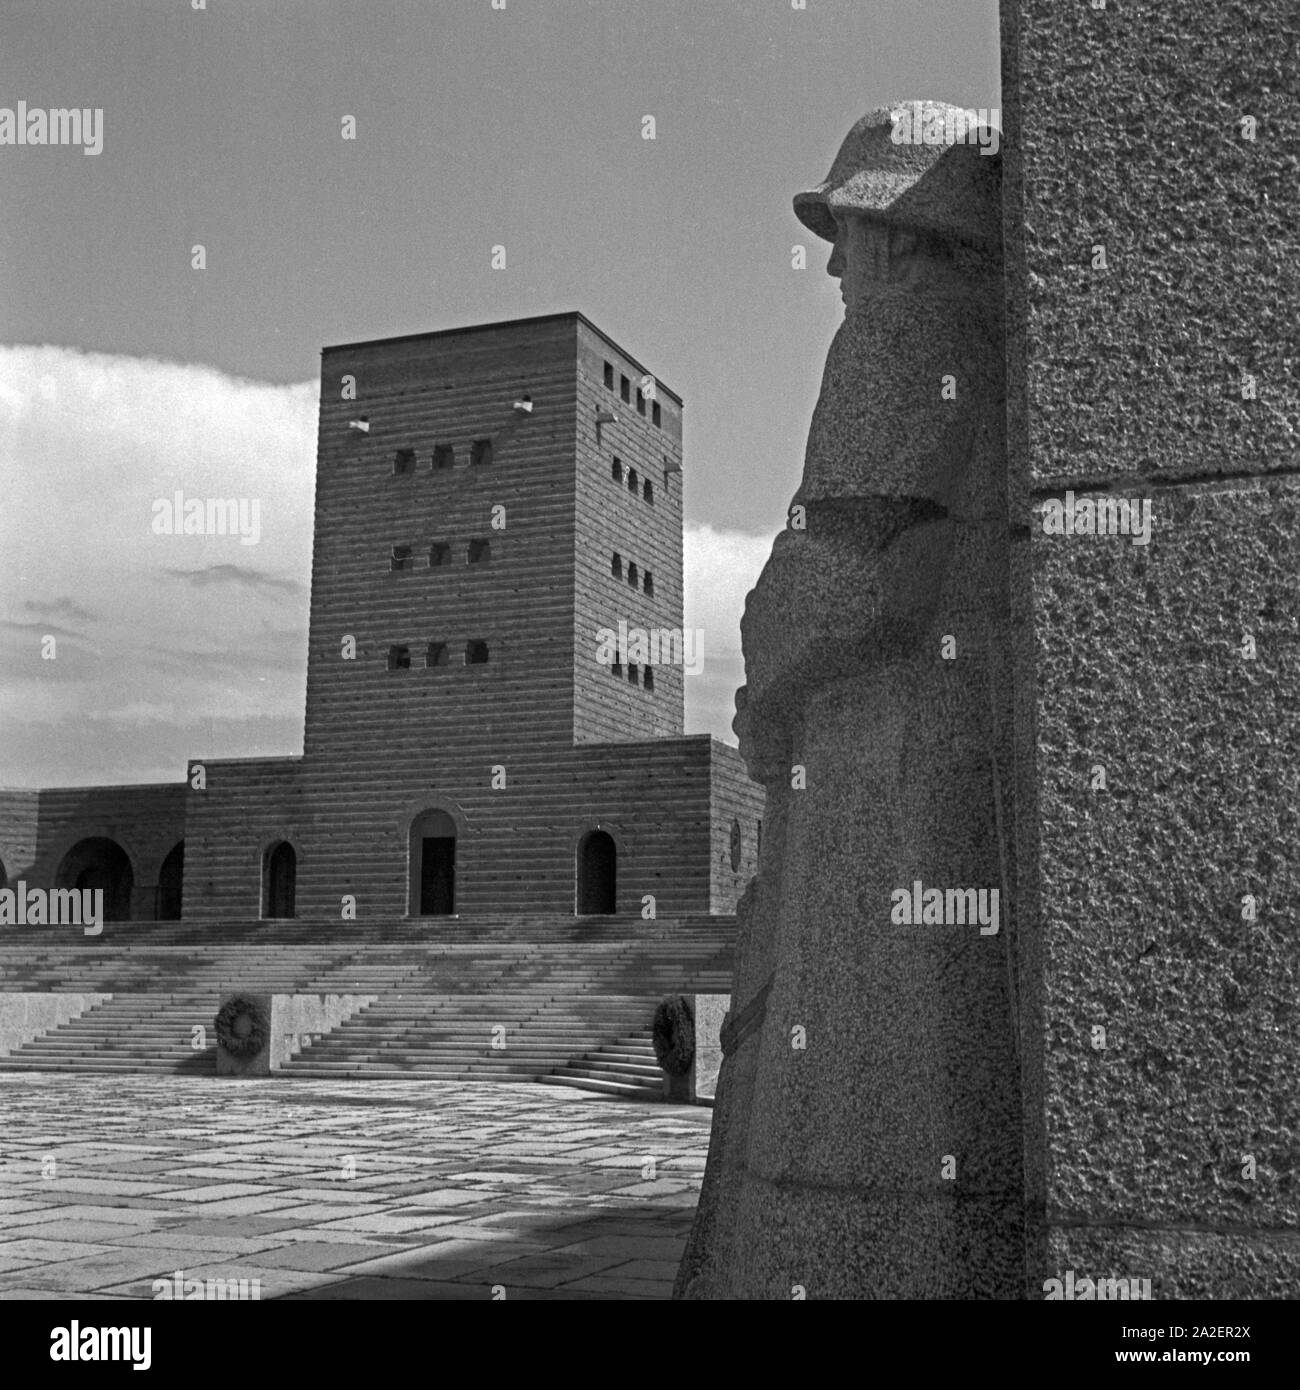 Innenhof im Tannenberg Denkmal bei Hohenstein in Ostpreußen, Deutschland 1930er Jahre. Cortile interno a Tannenberg monumento vicino a Hohenstein nella Prussia orientale, Germania 1930s. Foto Stock